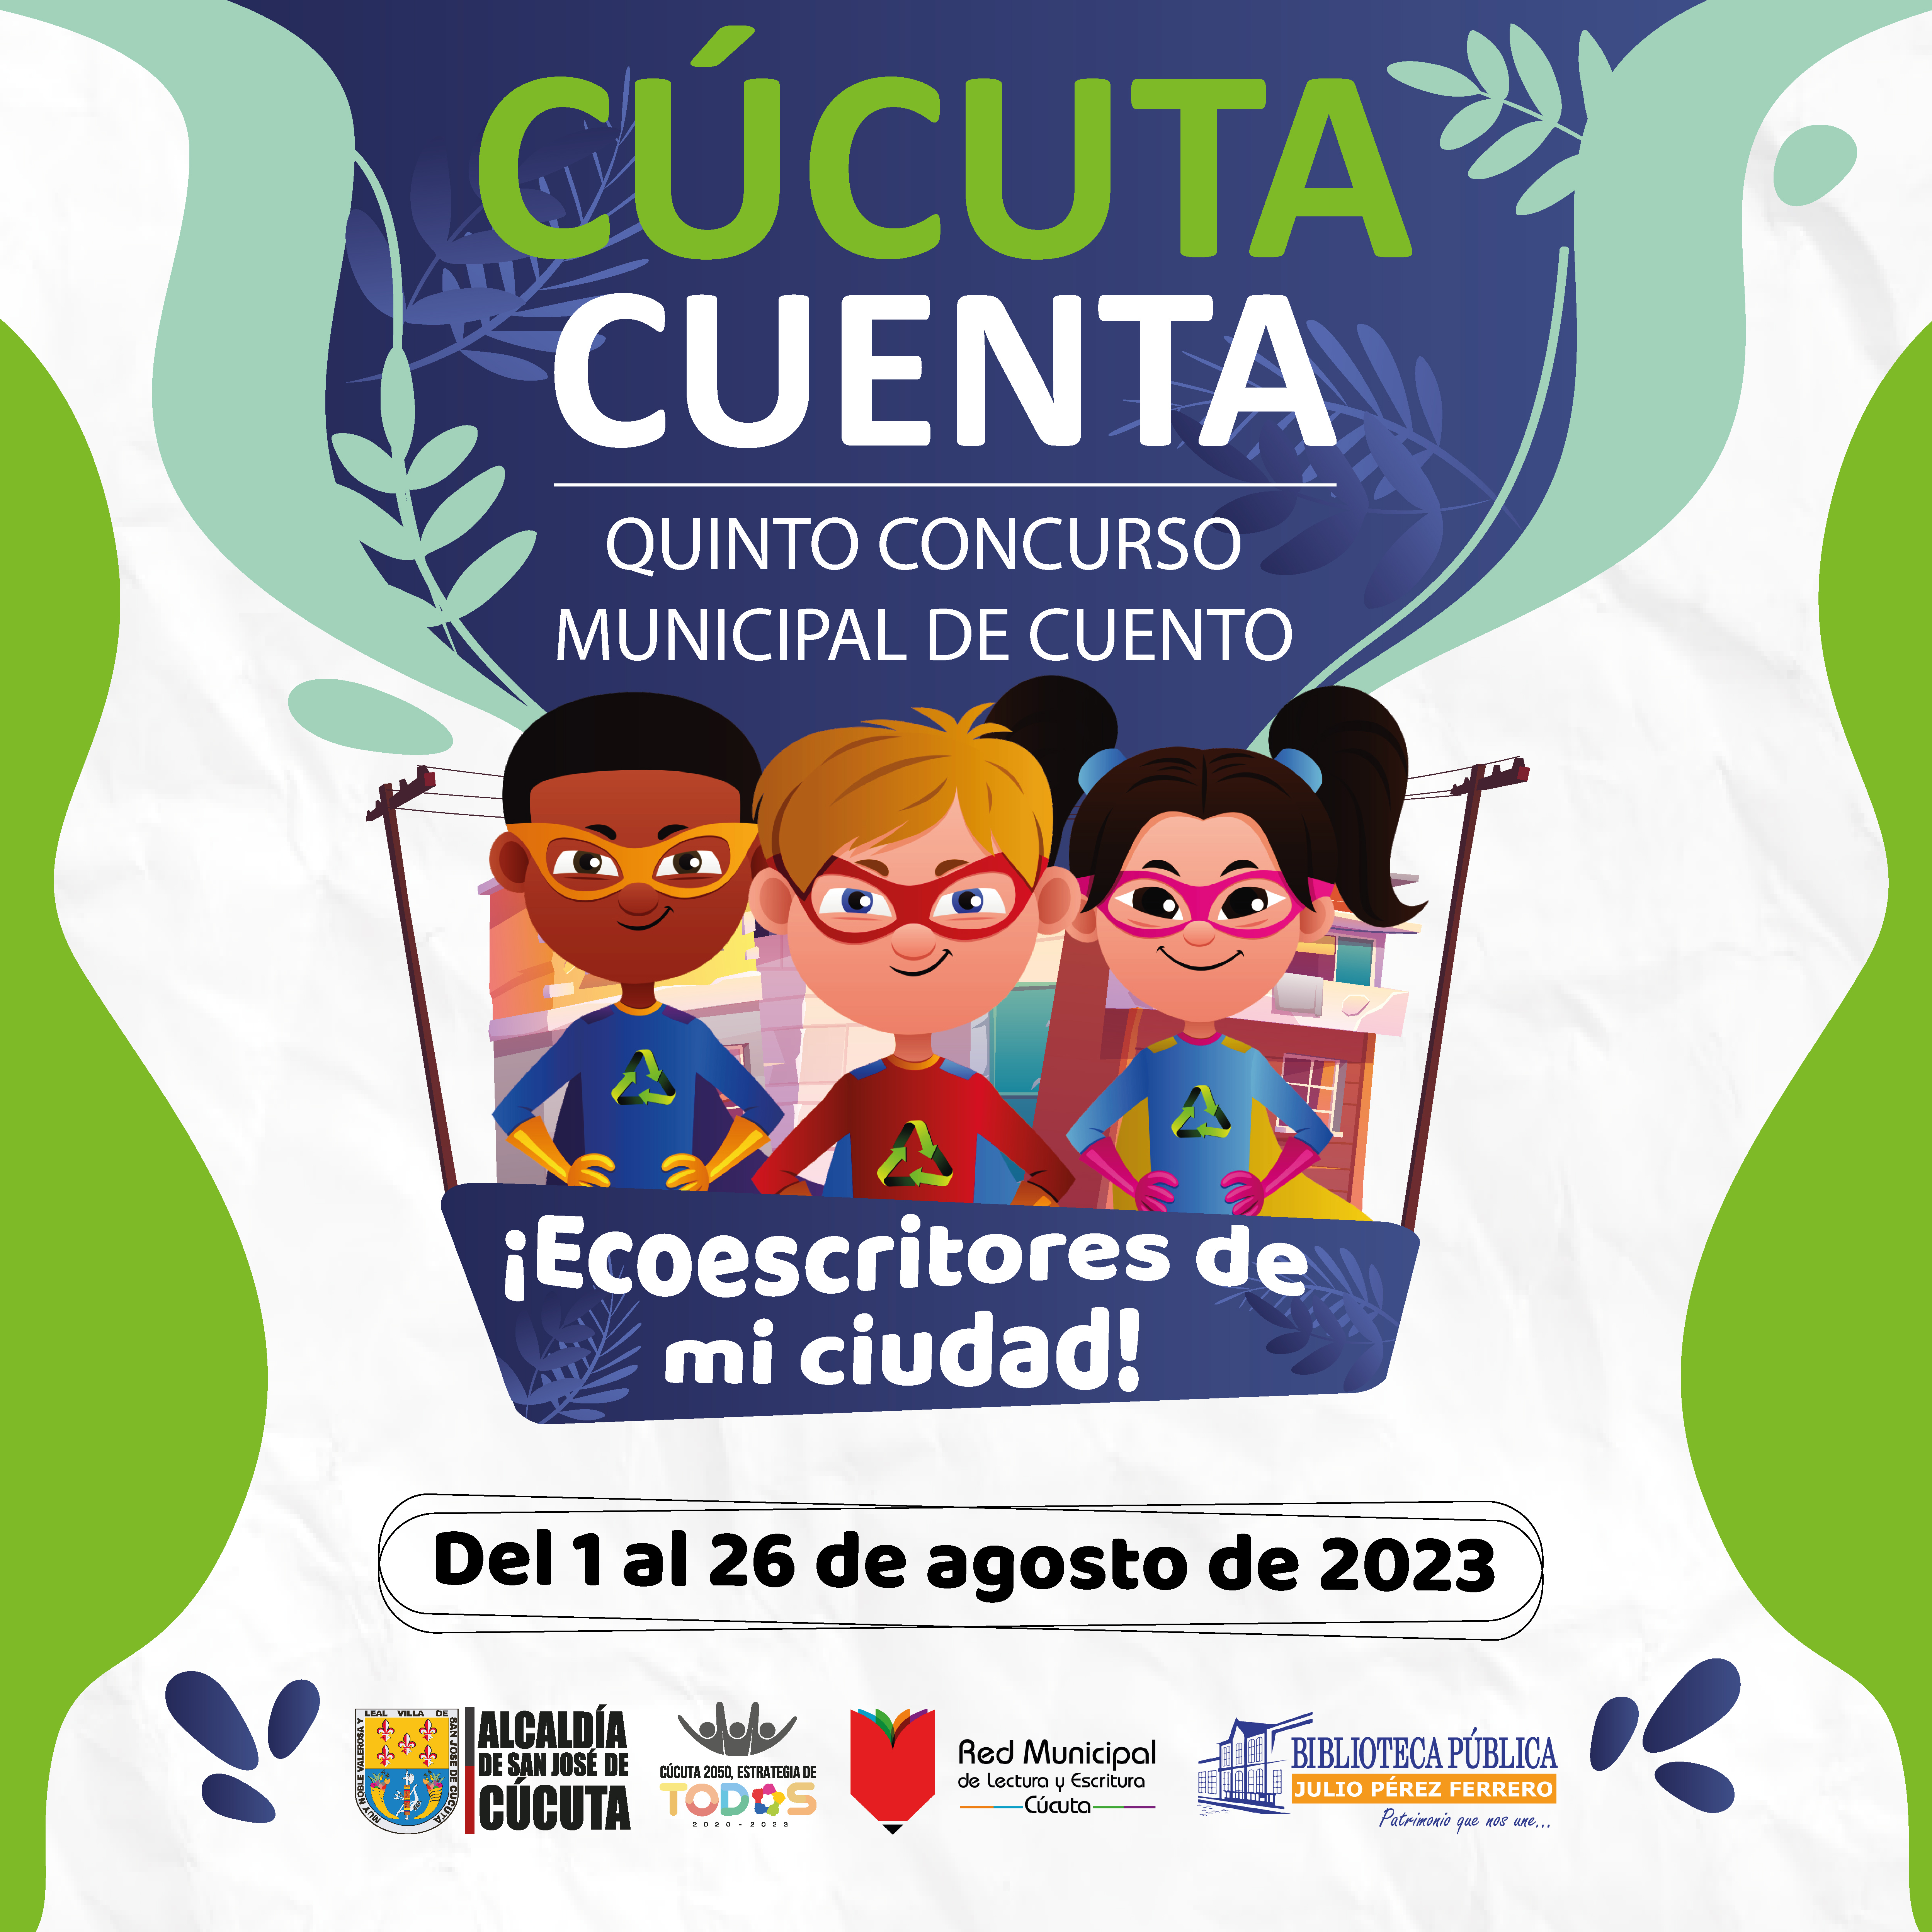 Cucuta-cuenta-2023